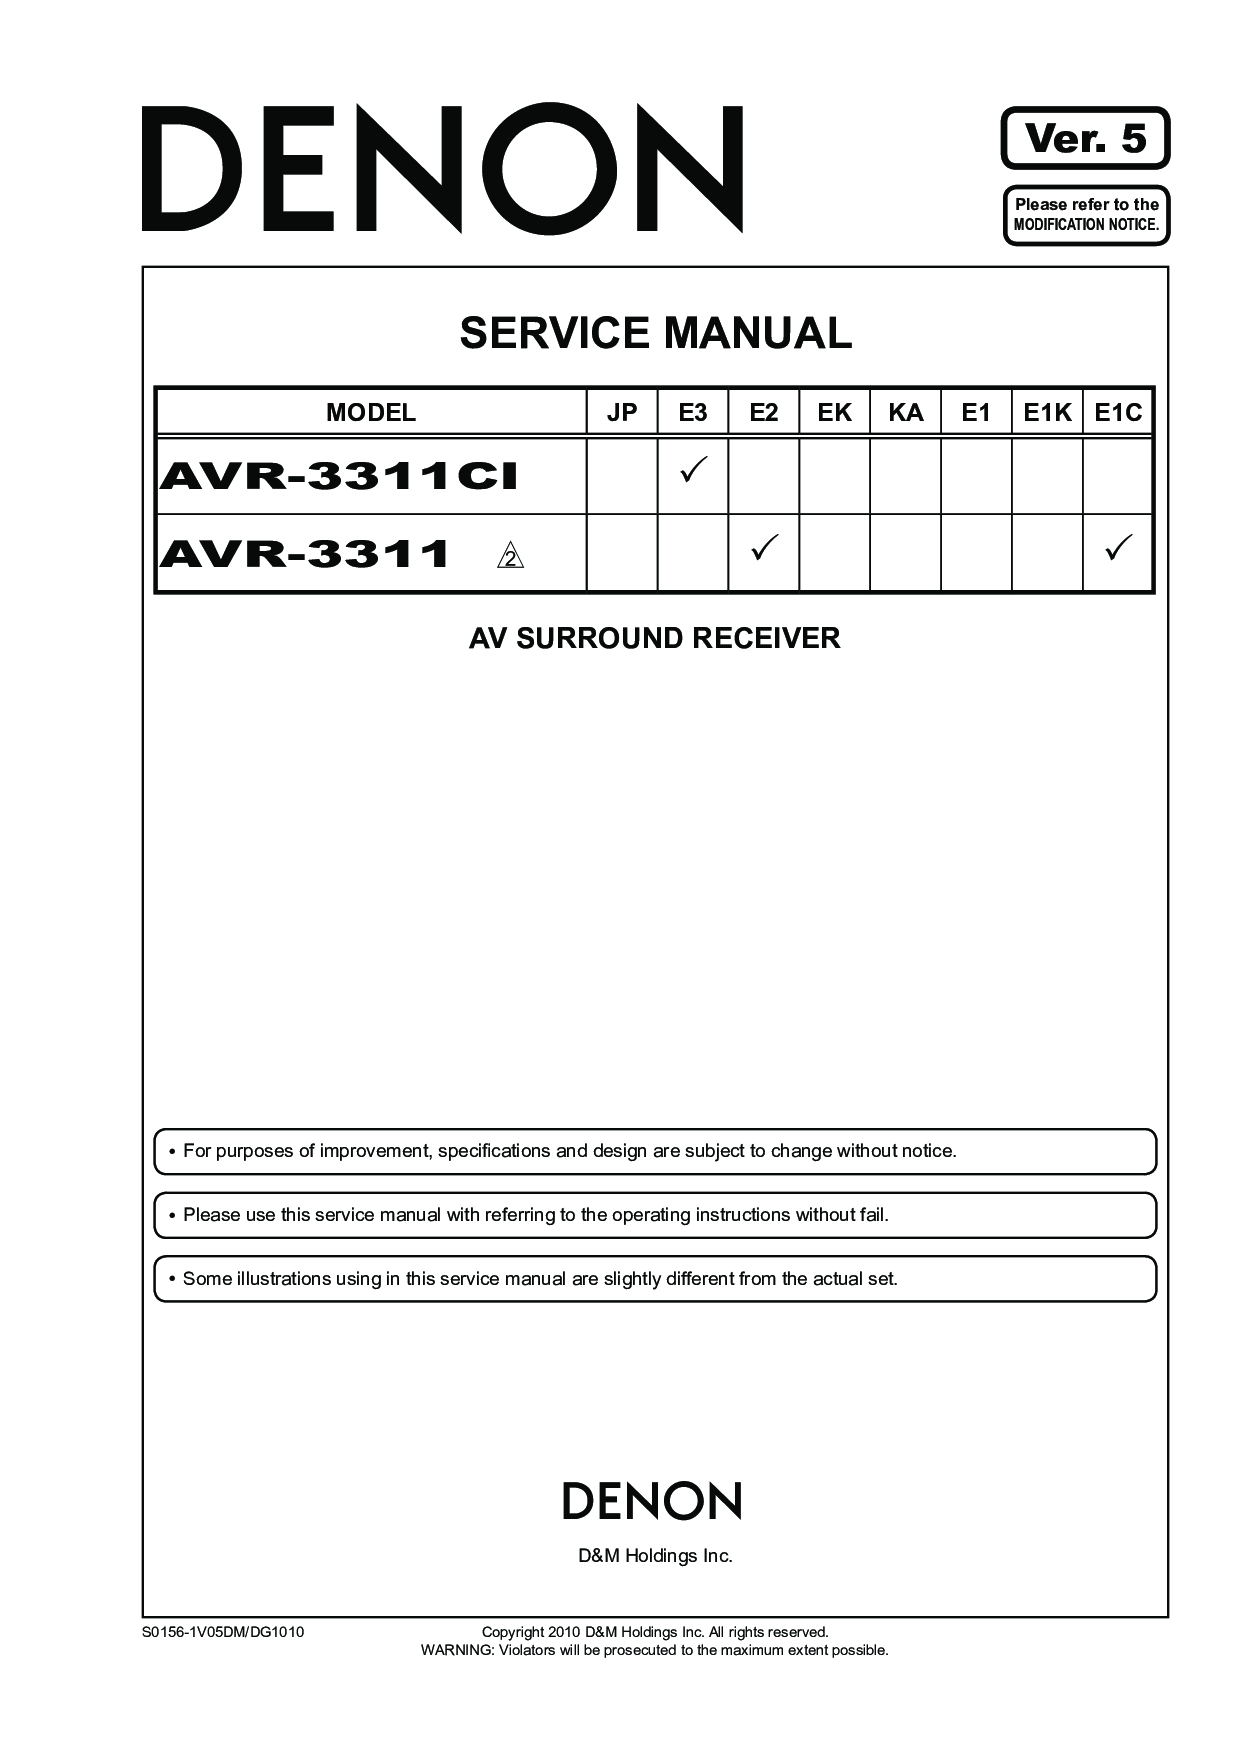 Denon AVR-3311-CI Service Manual